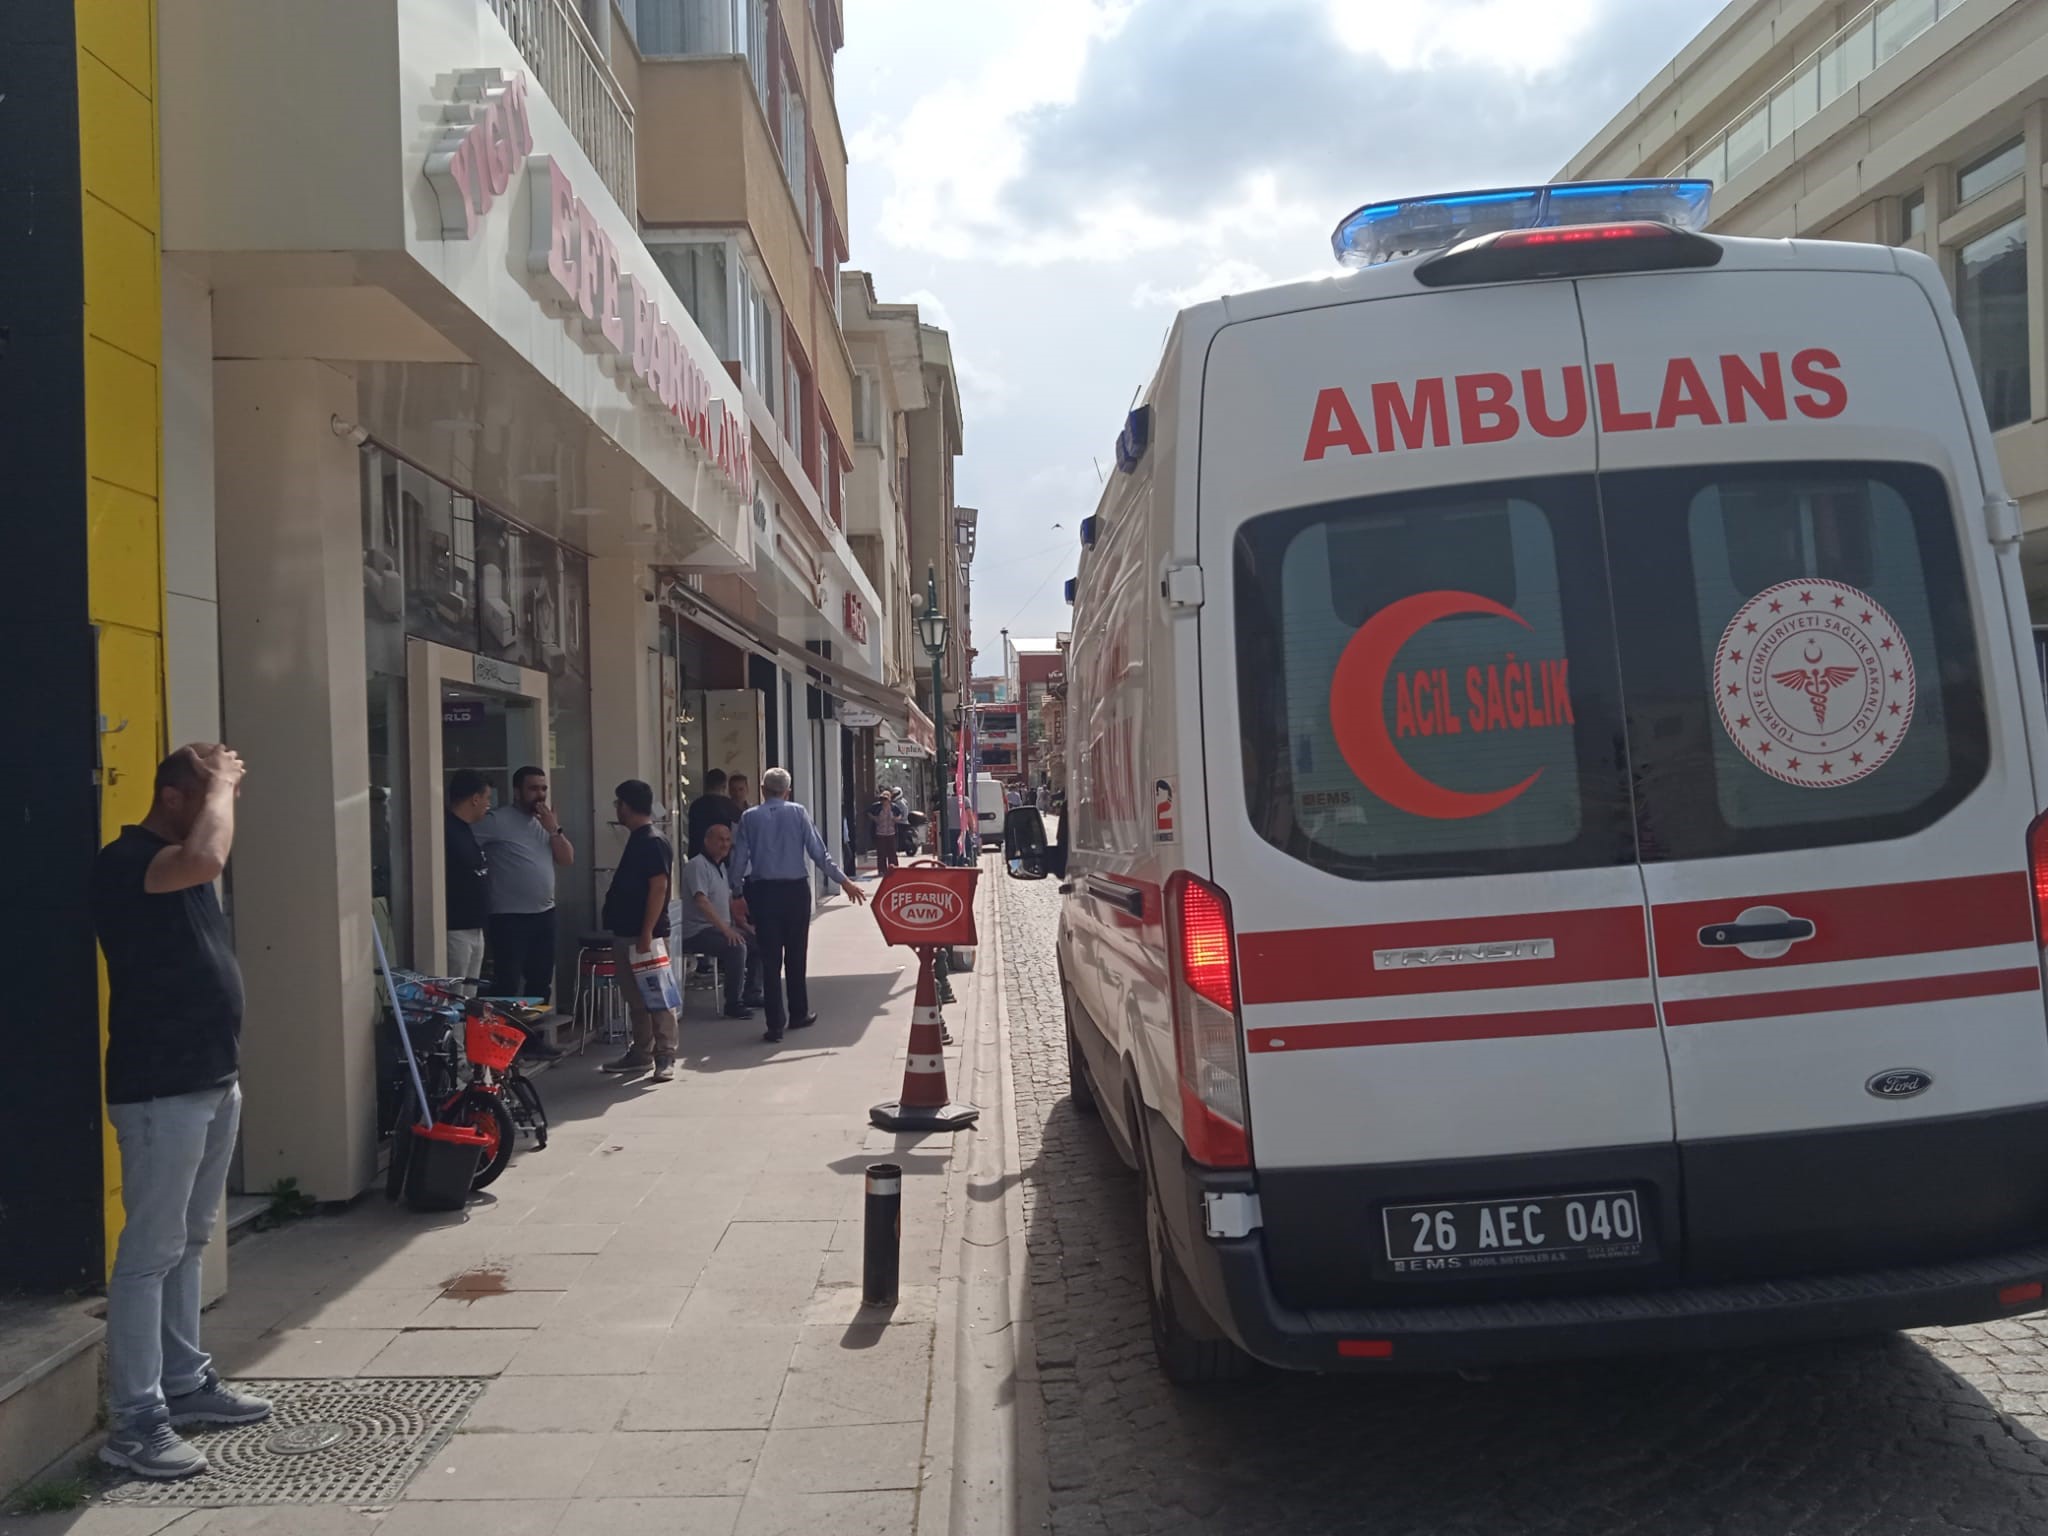 Eskişehir’de camdan düşen 18 aylık çocuk yaralandı